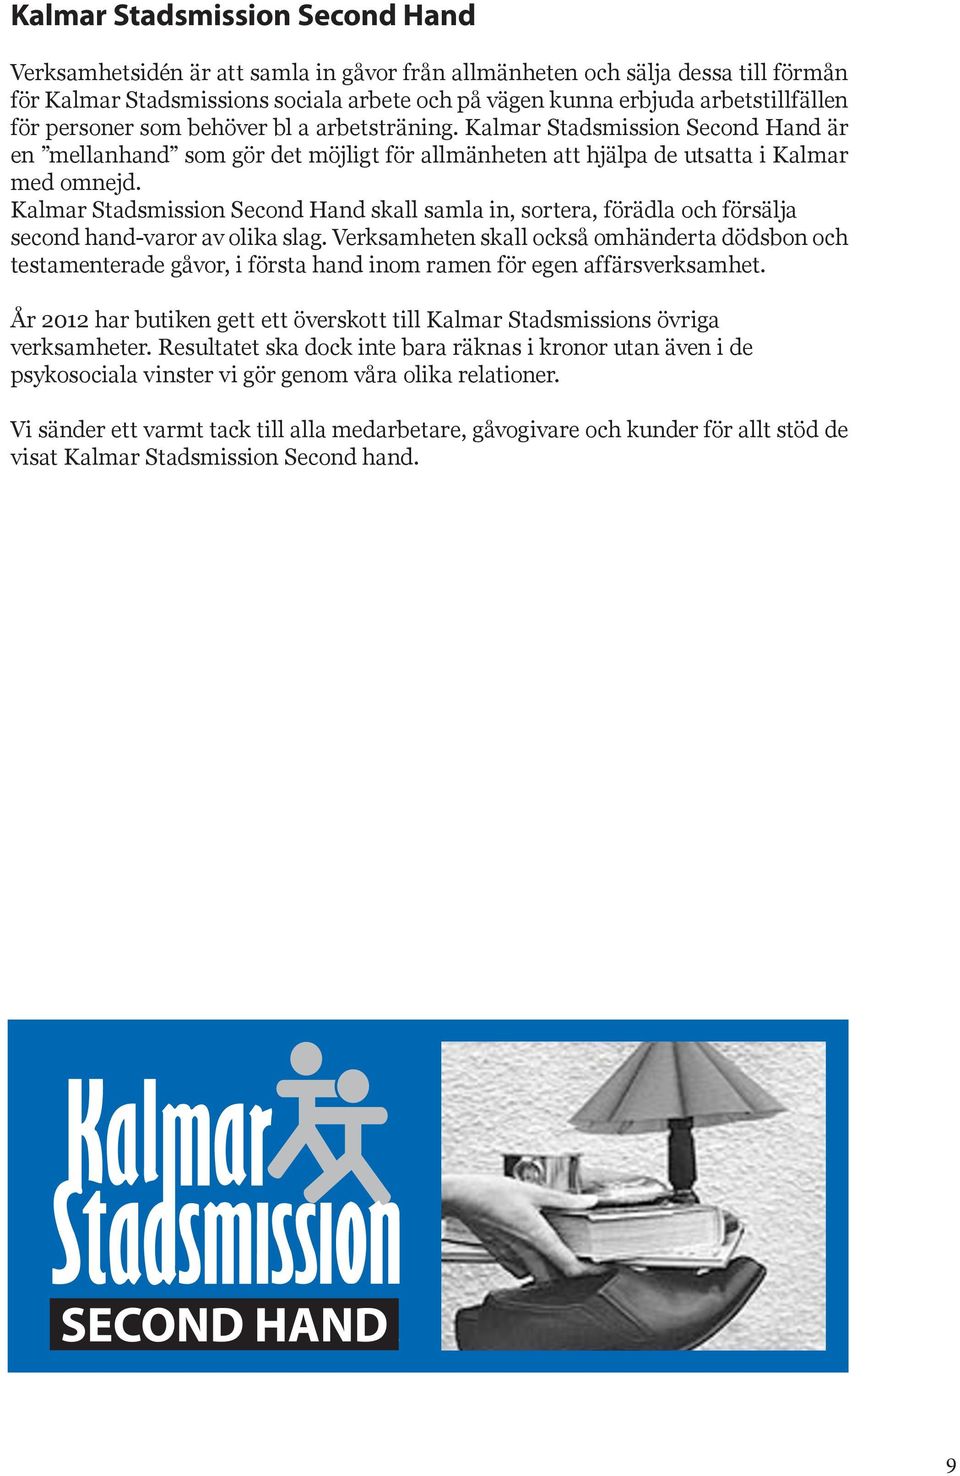 Kalmar Stadsmission Second Hand skall samla in, sortera, förädla och försälja second hand-varor av olika slag.